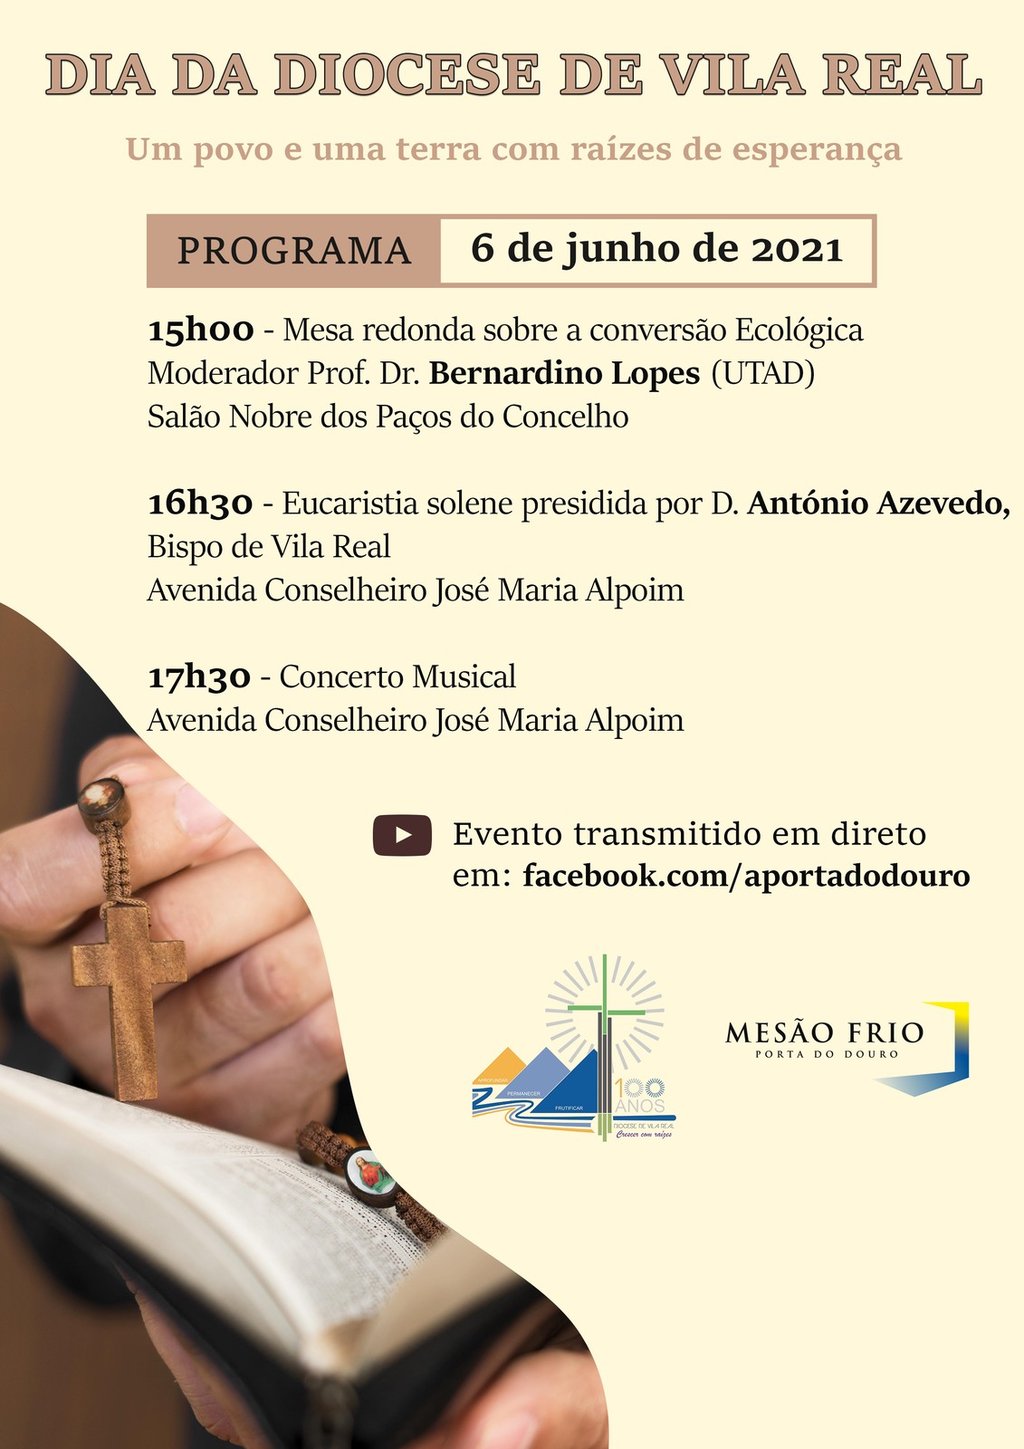 Dia da Diocese de Vila Real